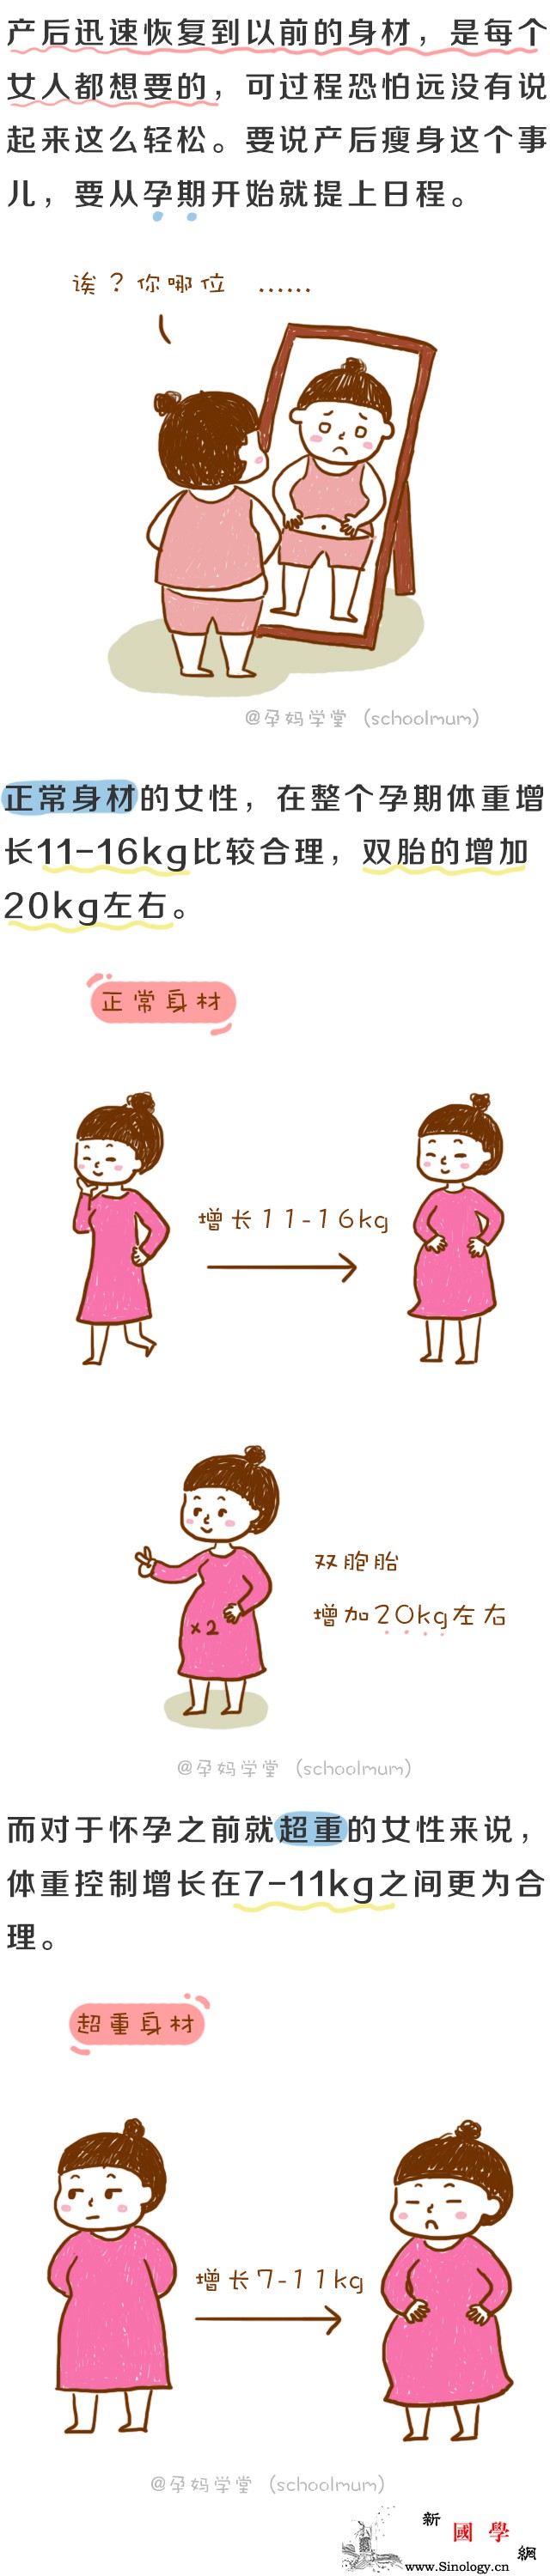 产后瘦身有诀窍产后瘦身的正确方法看这里→_孕期-产后-日程-事儿-